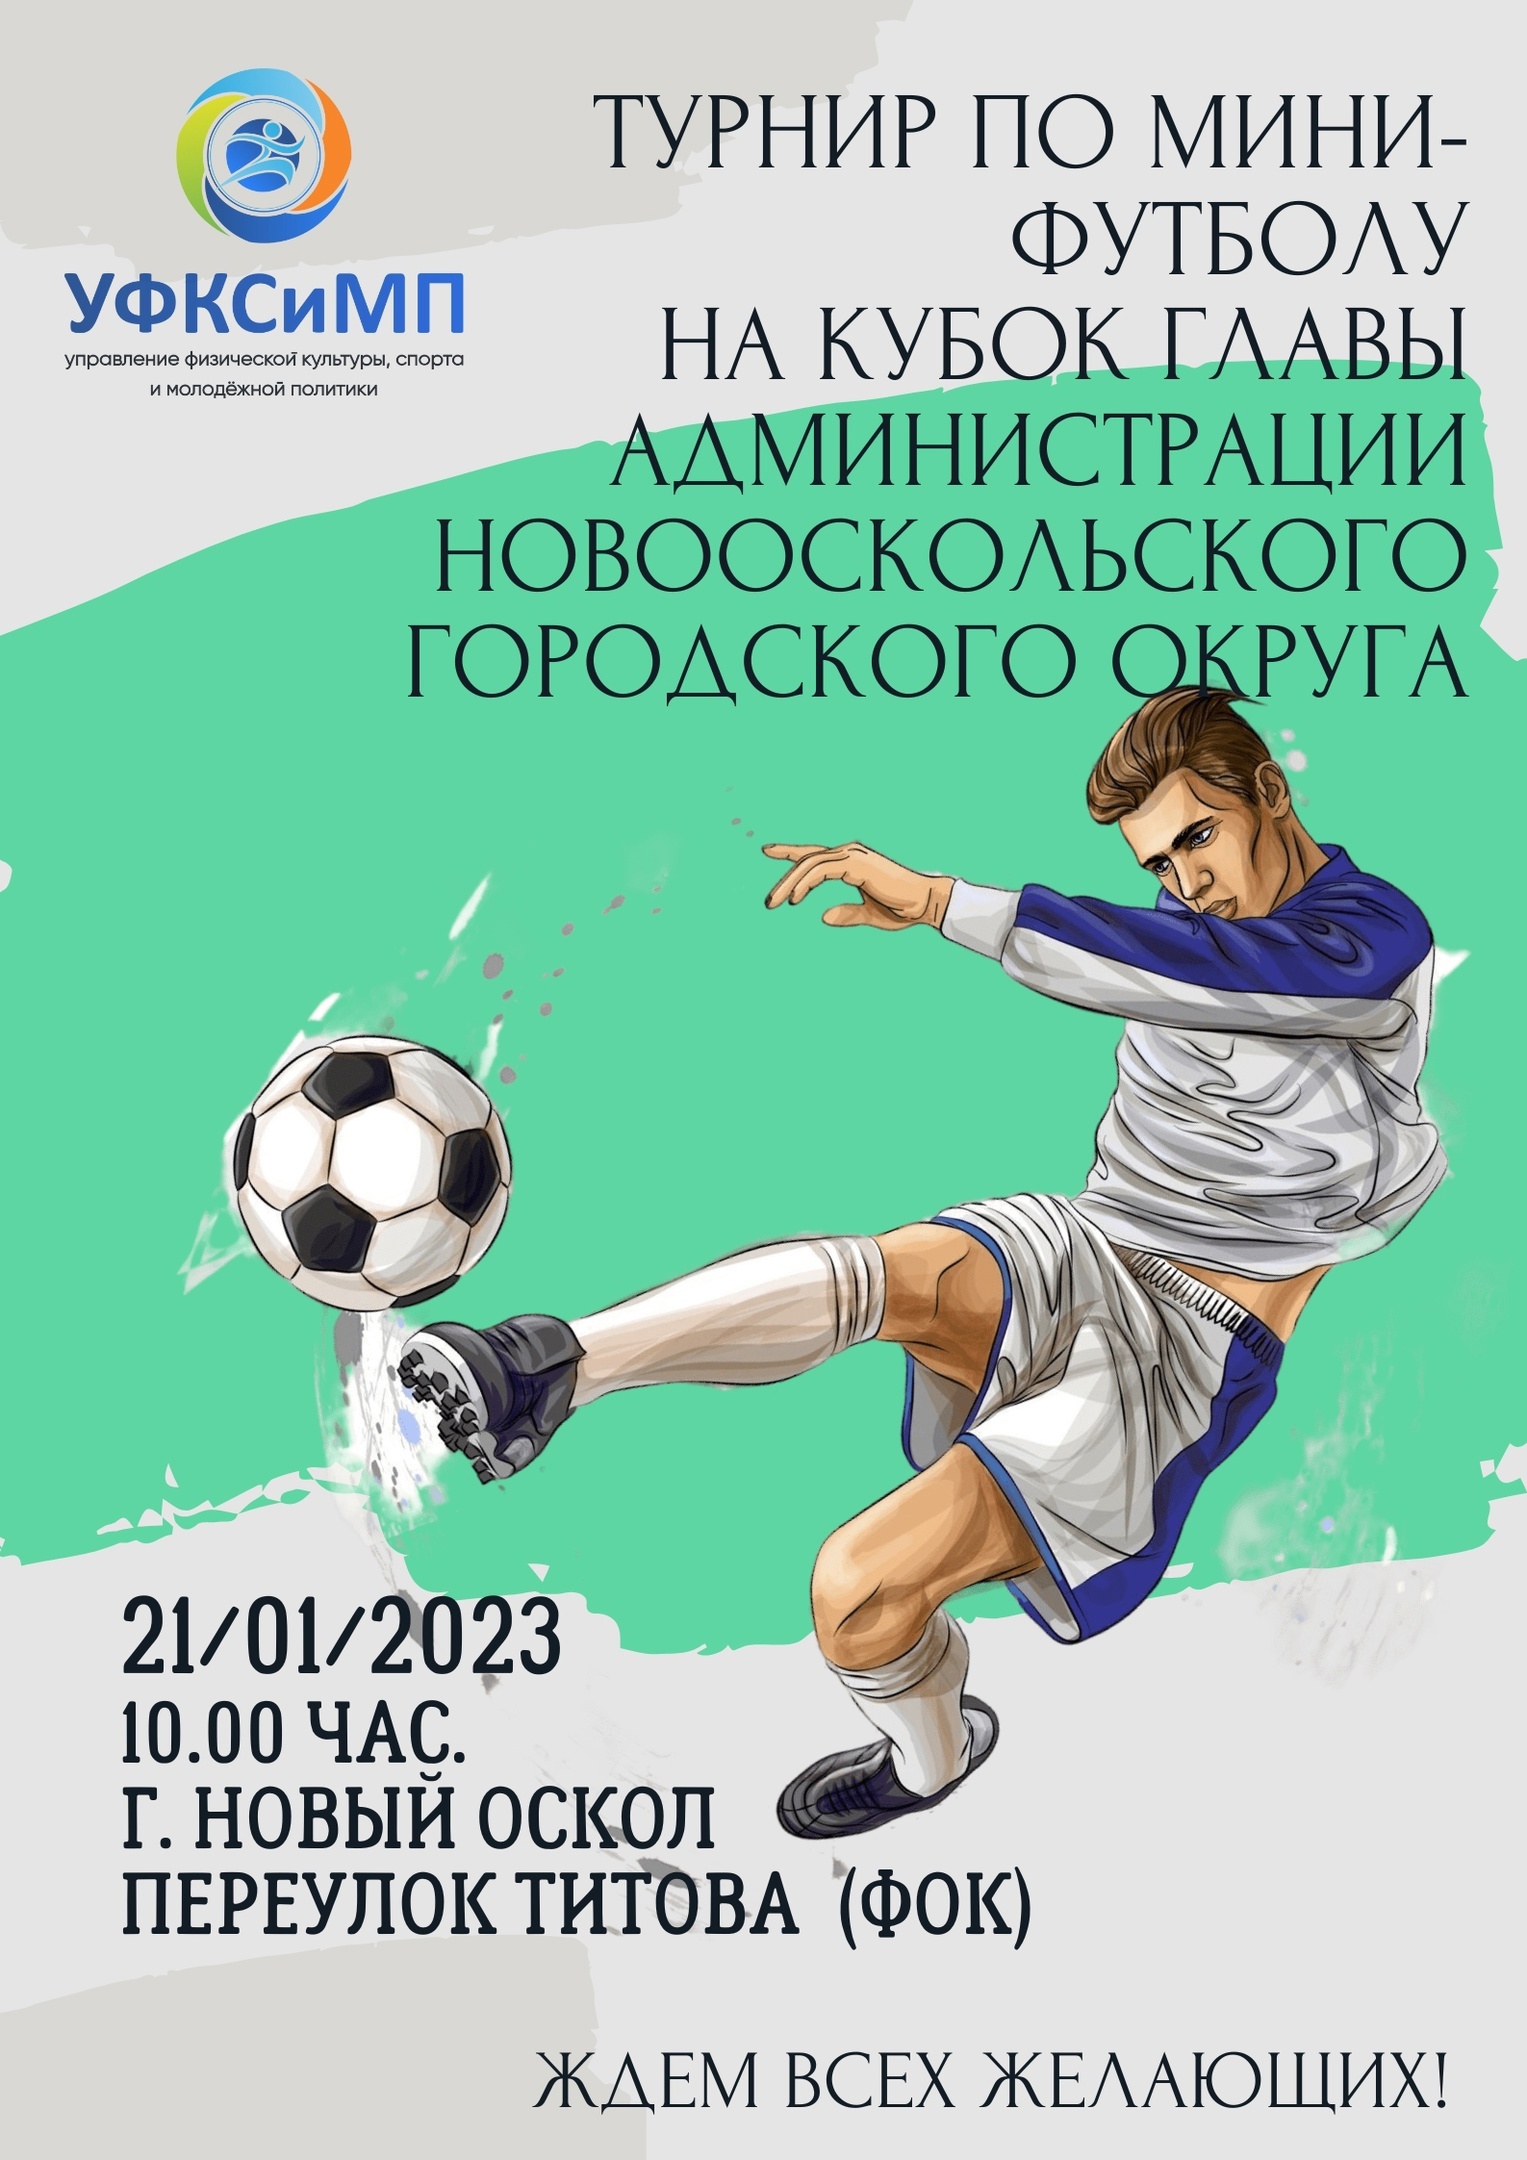 Приглашаем новооскольцев посетить турнир по мини-футболу на кубок главы администрации Новооскольского городского округа.